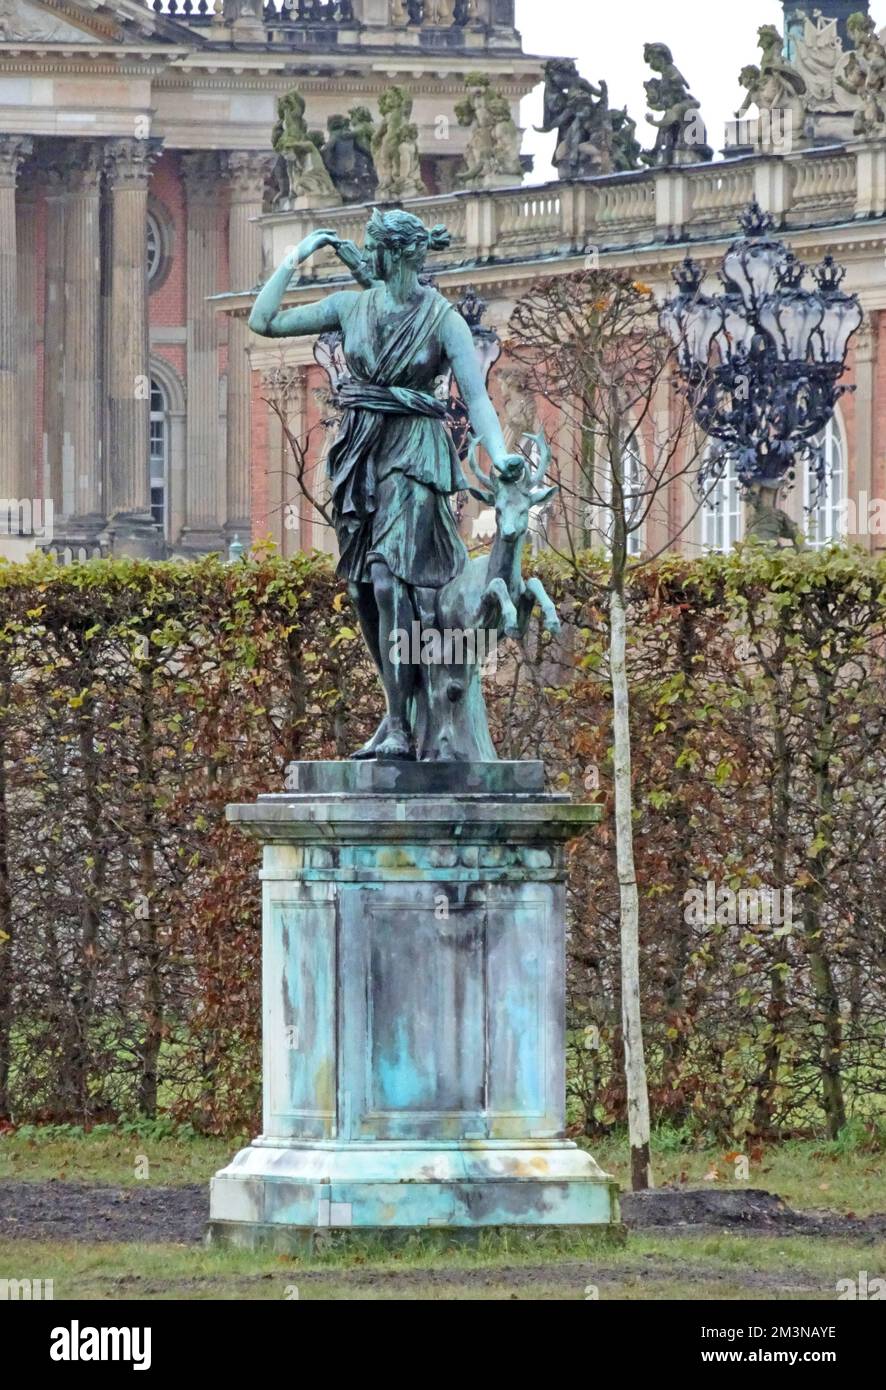 Potsdam, Germania - Nov 21 2017 statua di bronzo di Artemis o Diana con cervi a Sanssouci. E' una copia di una famosa statua romana, fatta di marmo del Foto Stock